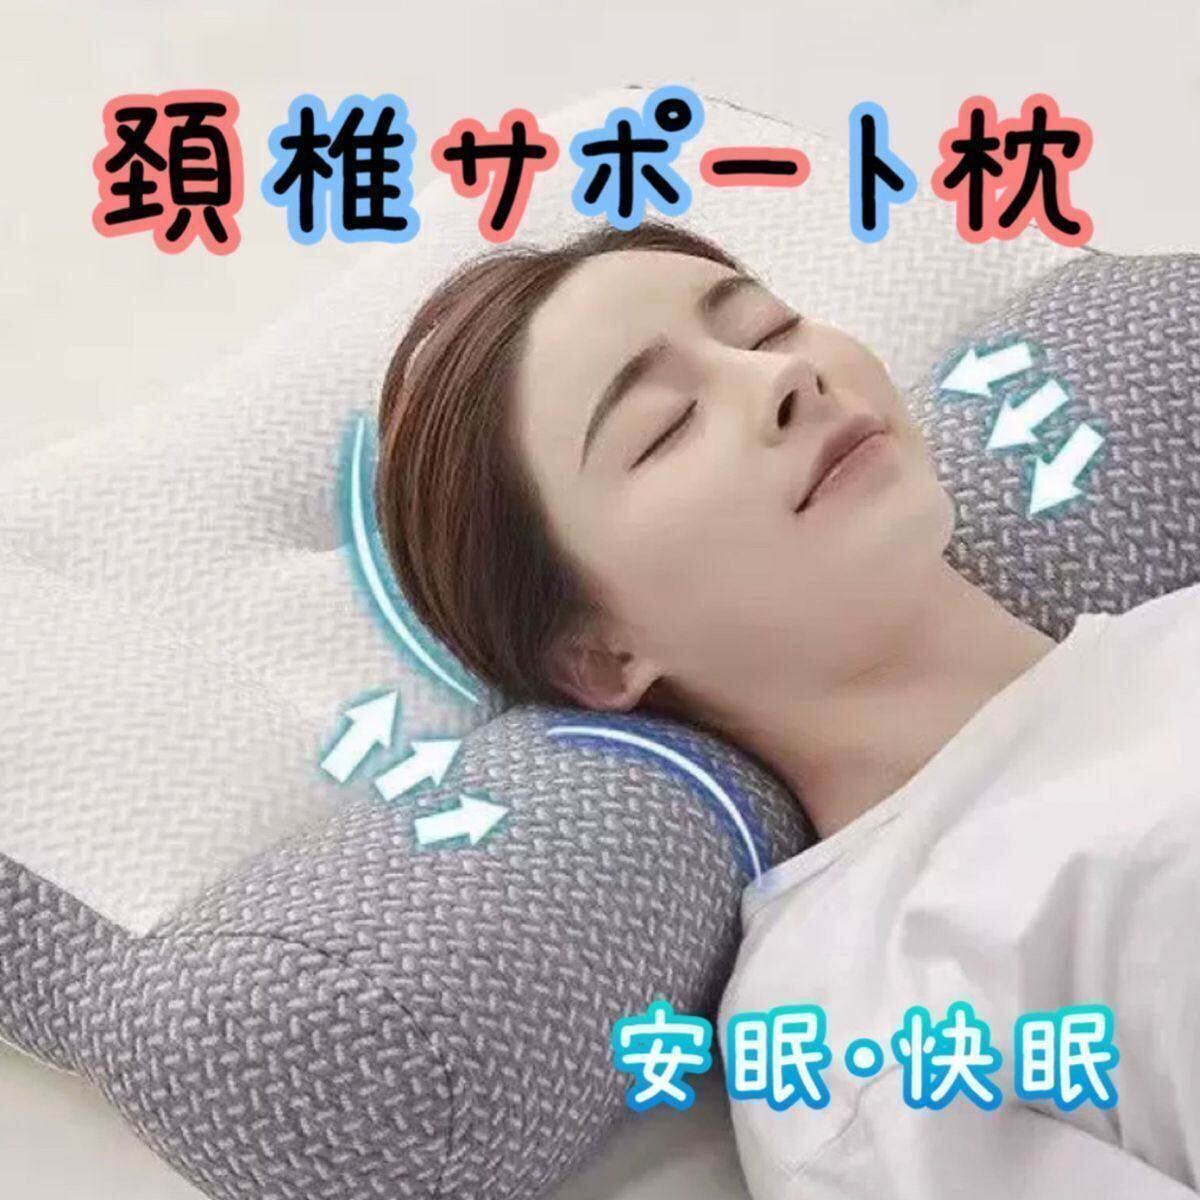 頚椎牽引枕 グレー 肩こり いびき 快眠 低反発 安眠 熟睡 ストレートネック 柔らかめの画像1